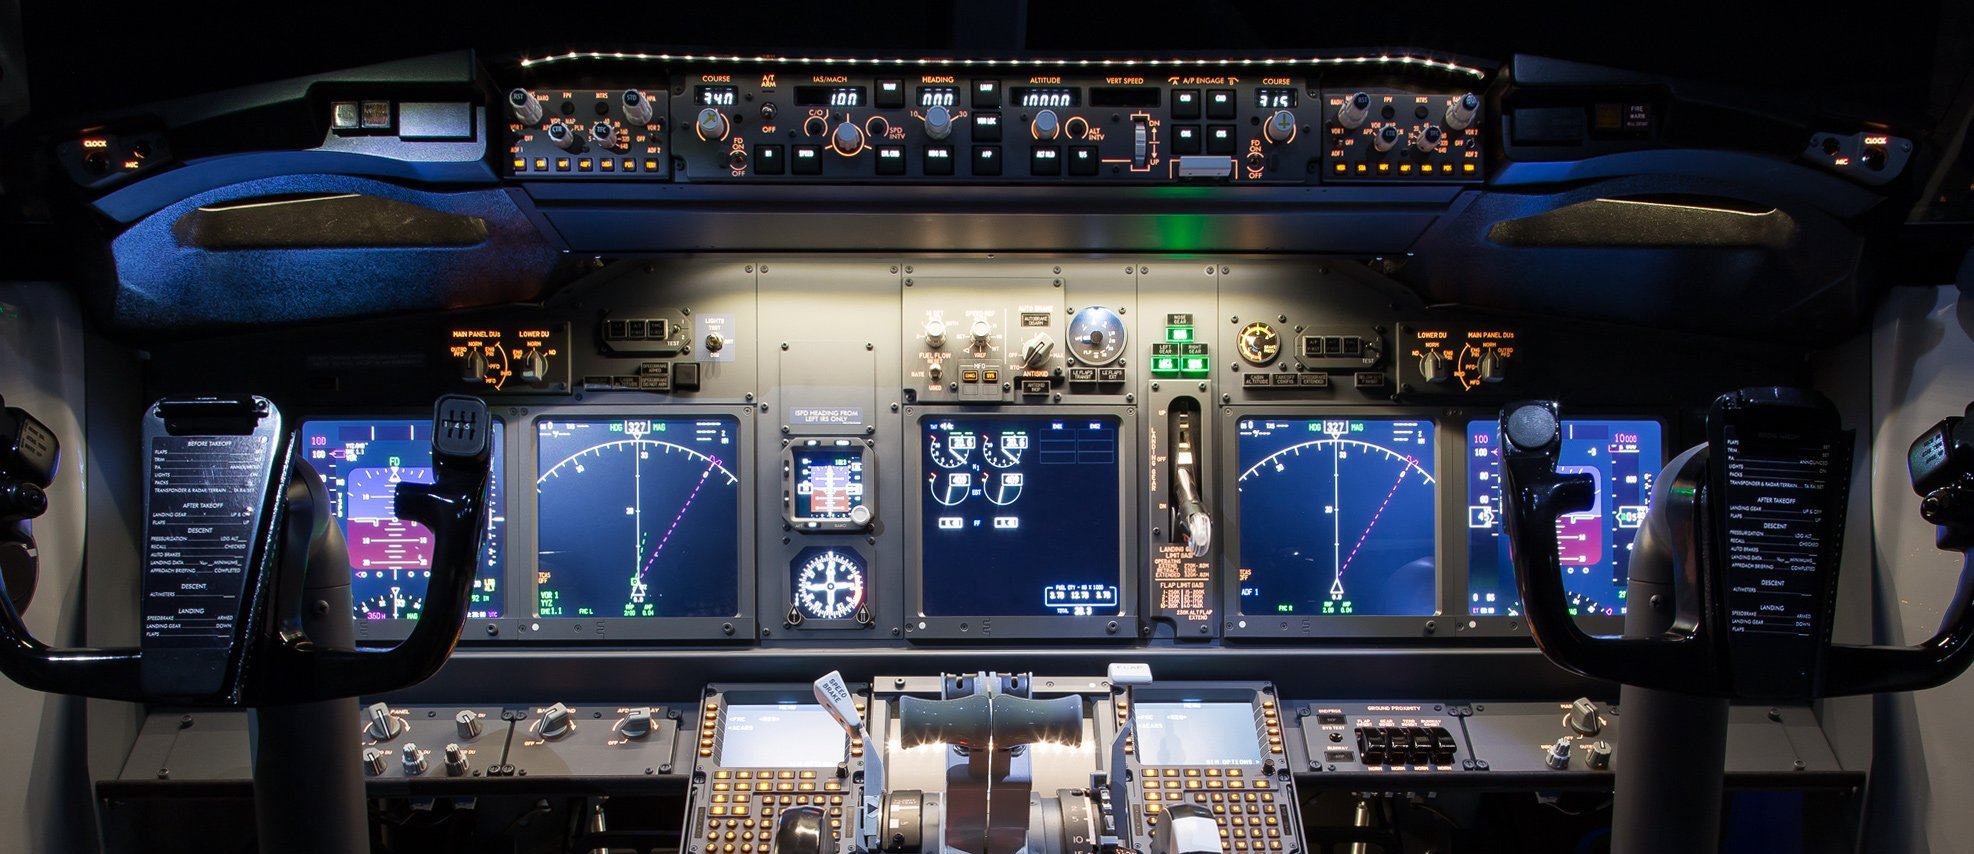 JetMax系列 飞行模拟器 方案书-311 